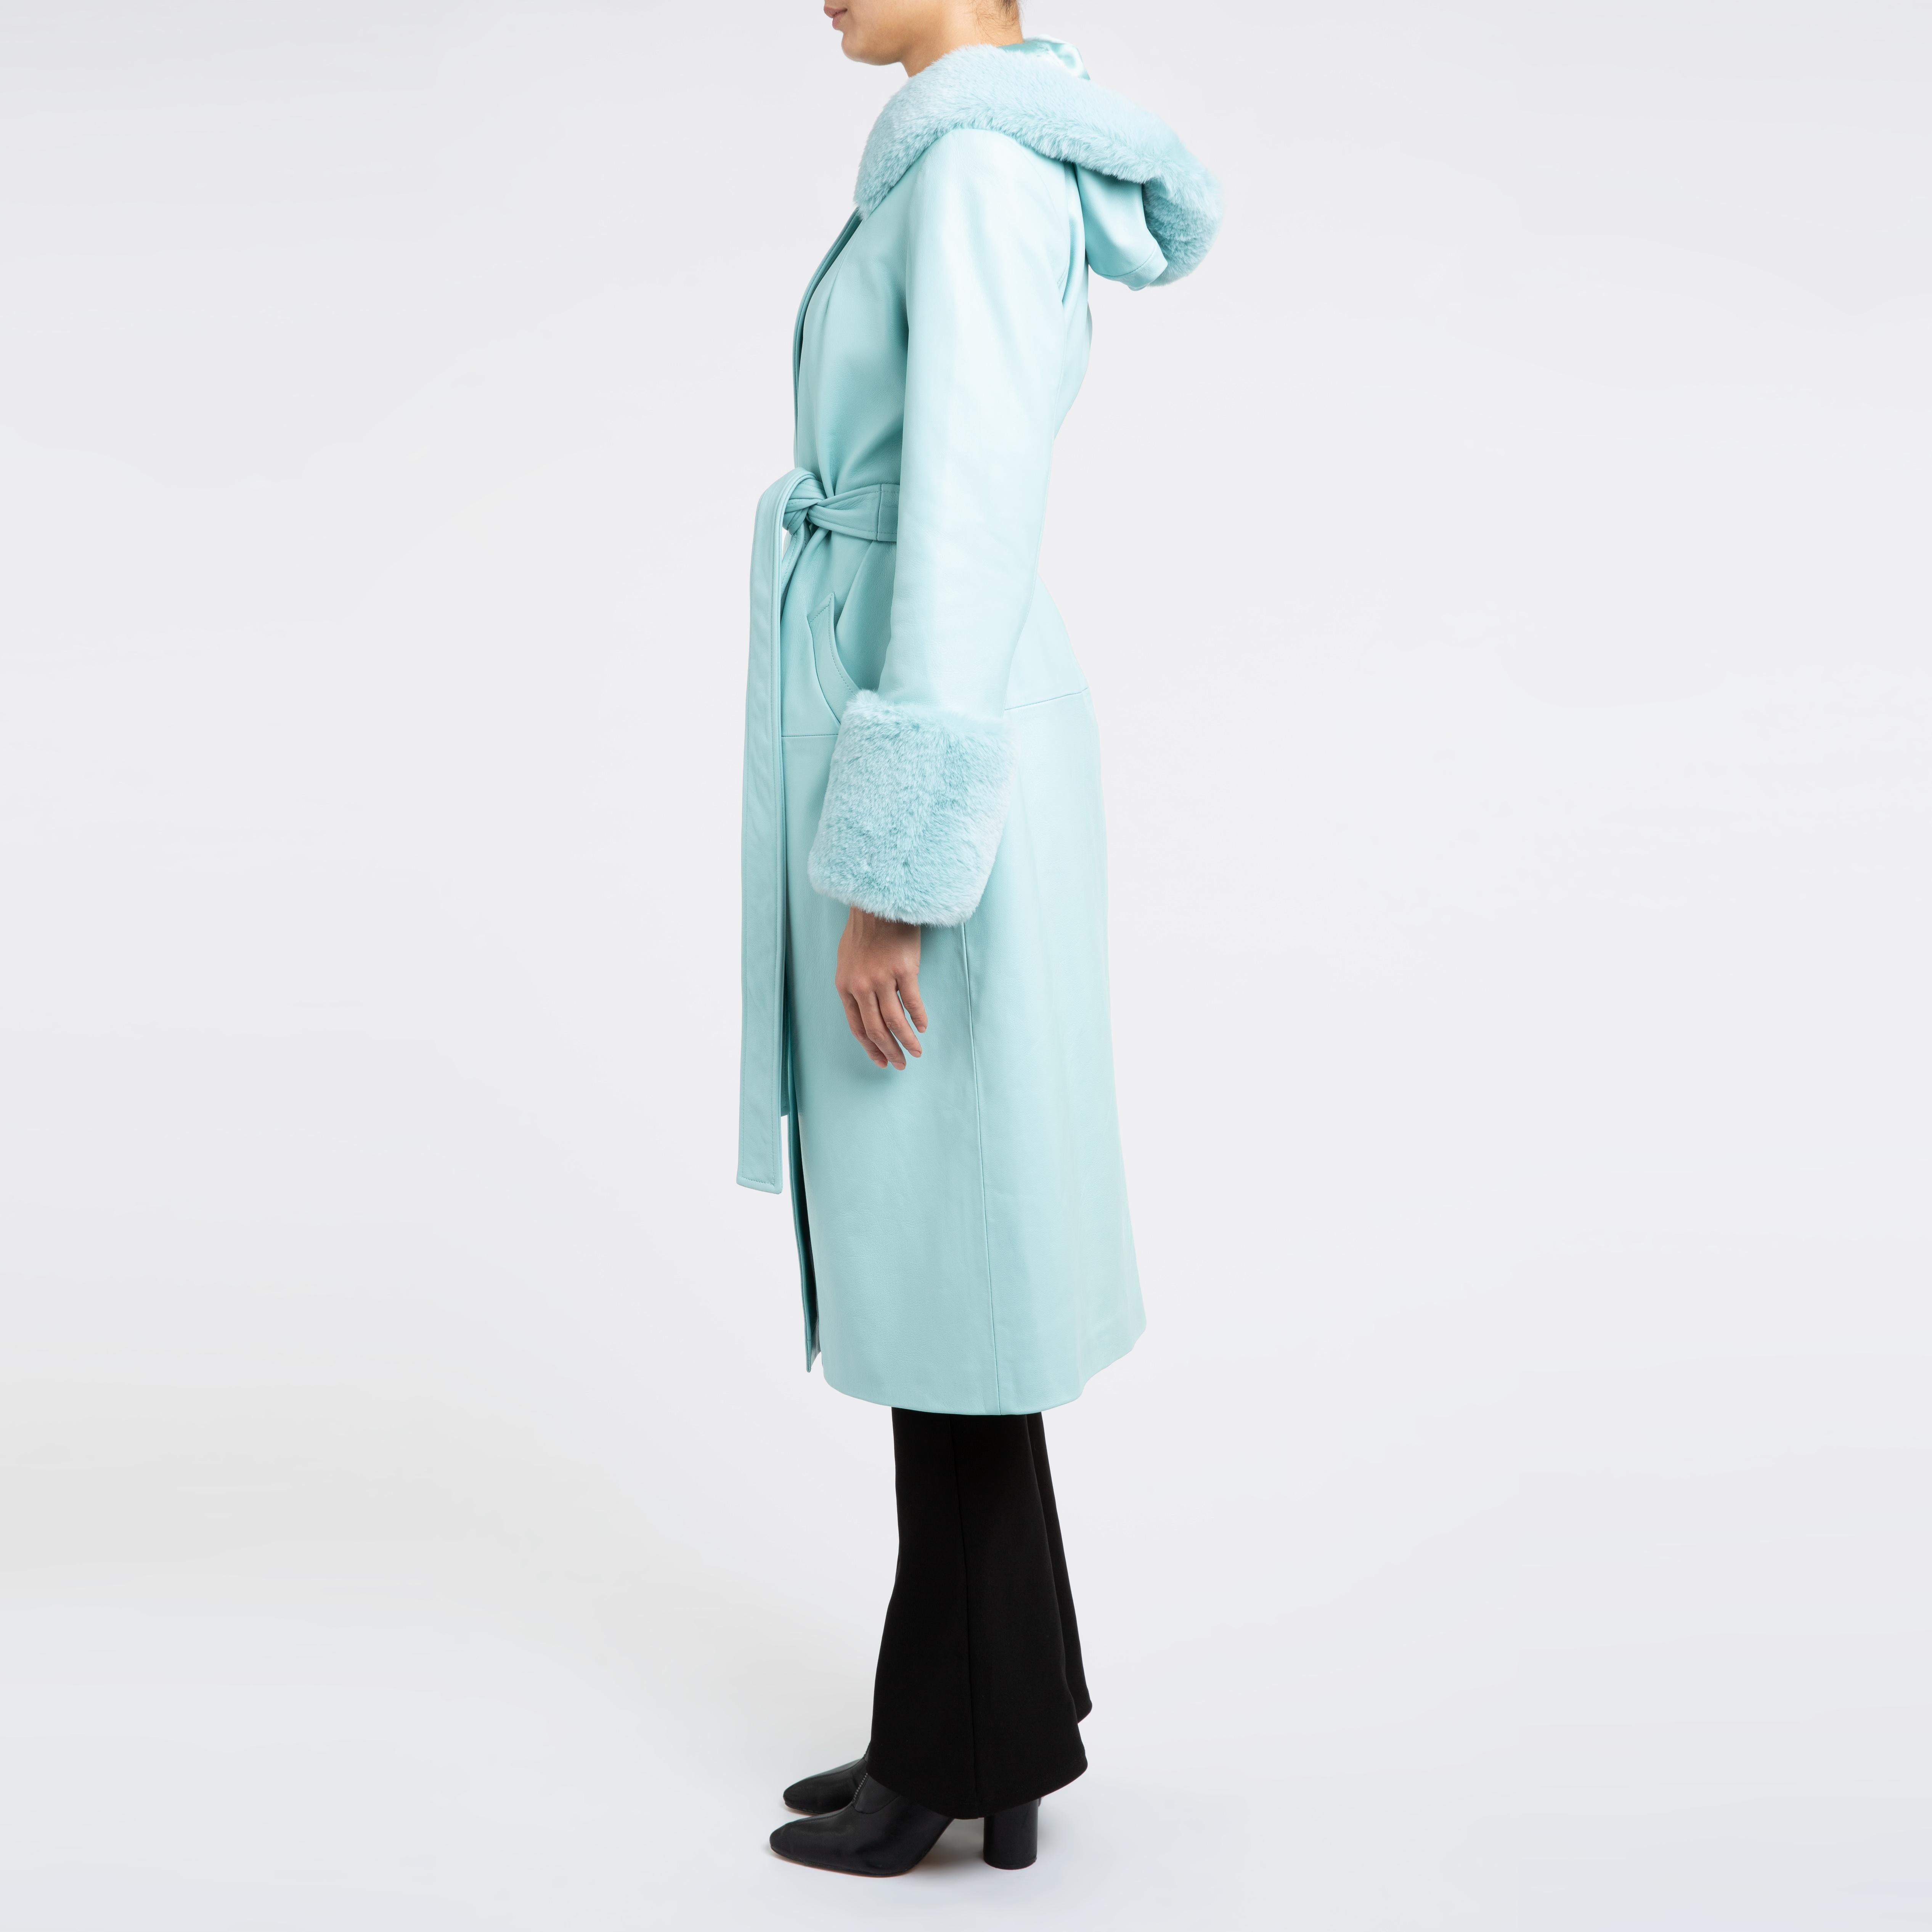 Women's Verheyen London Hooded Leather Coat in Blue Aquamarine & Faux Fur - Size uk 14 For Sale